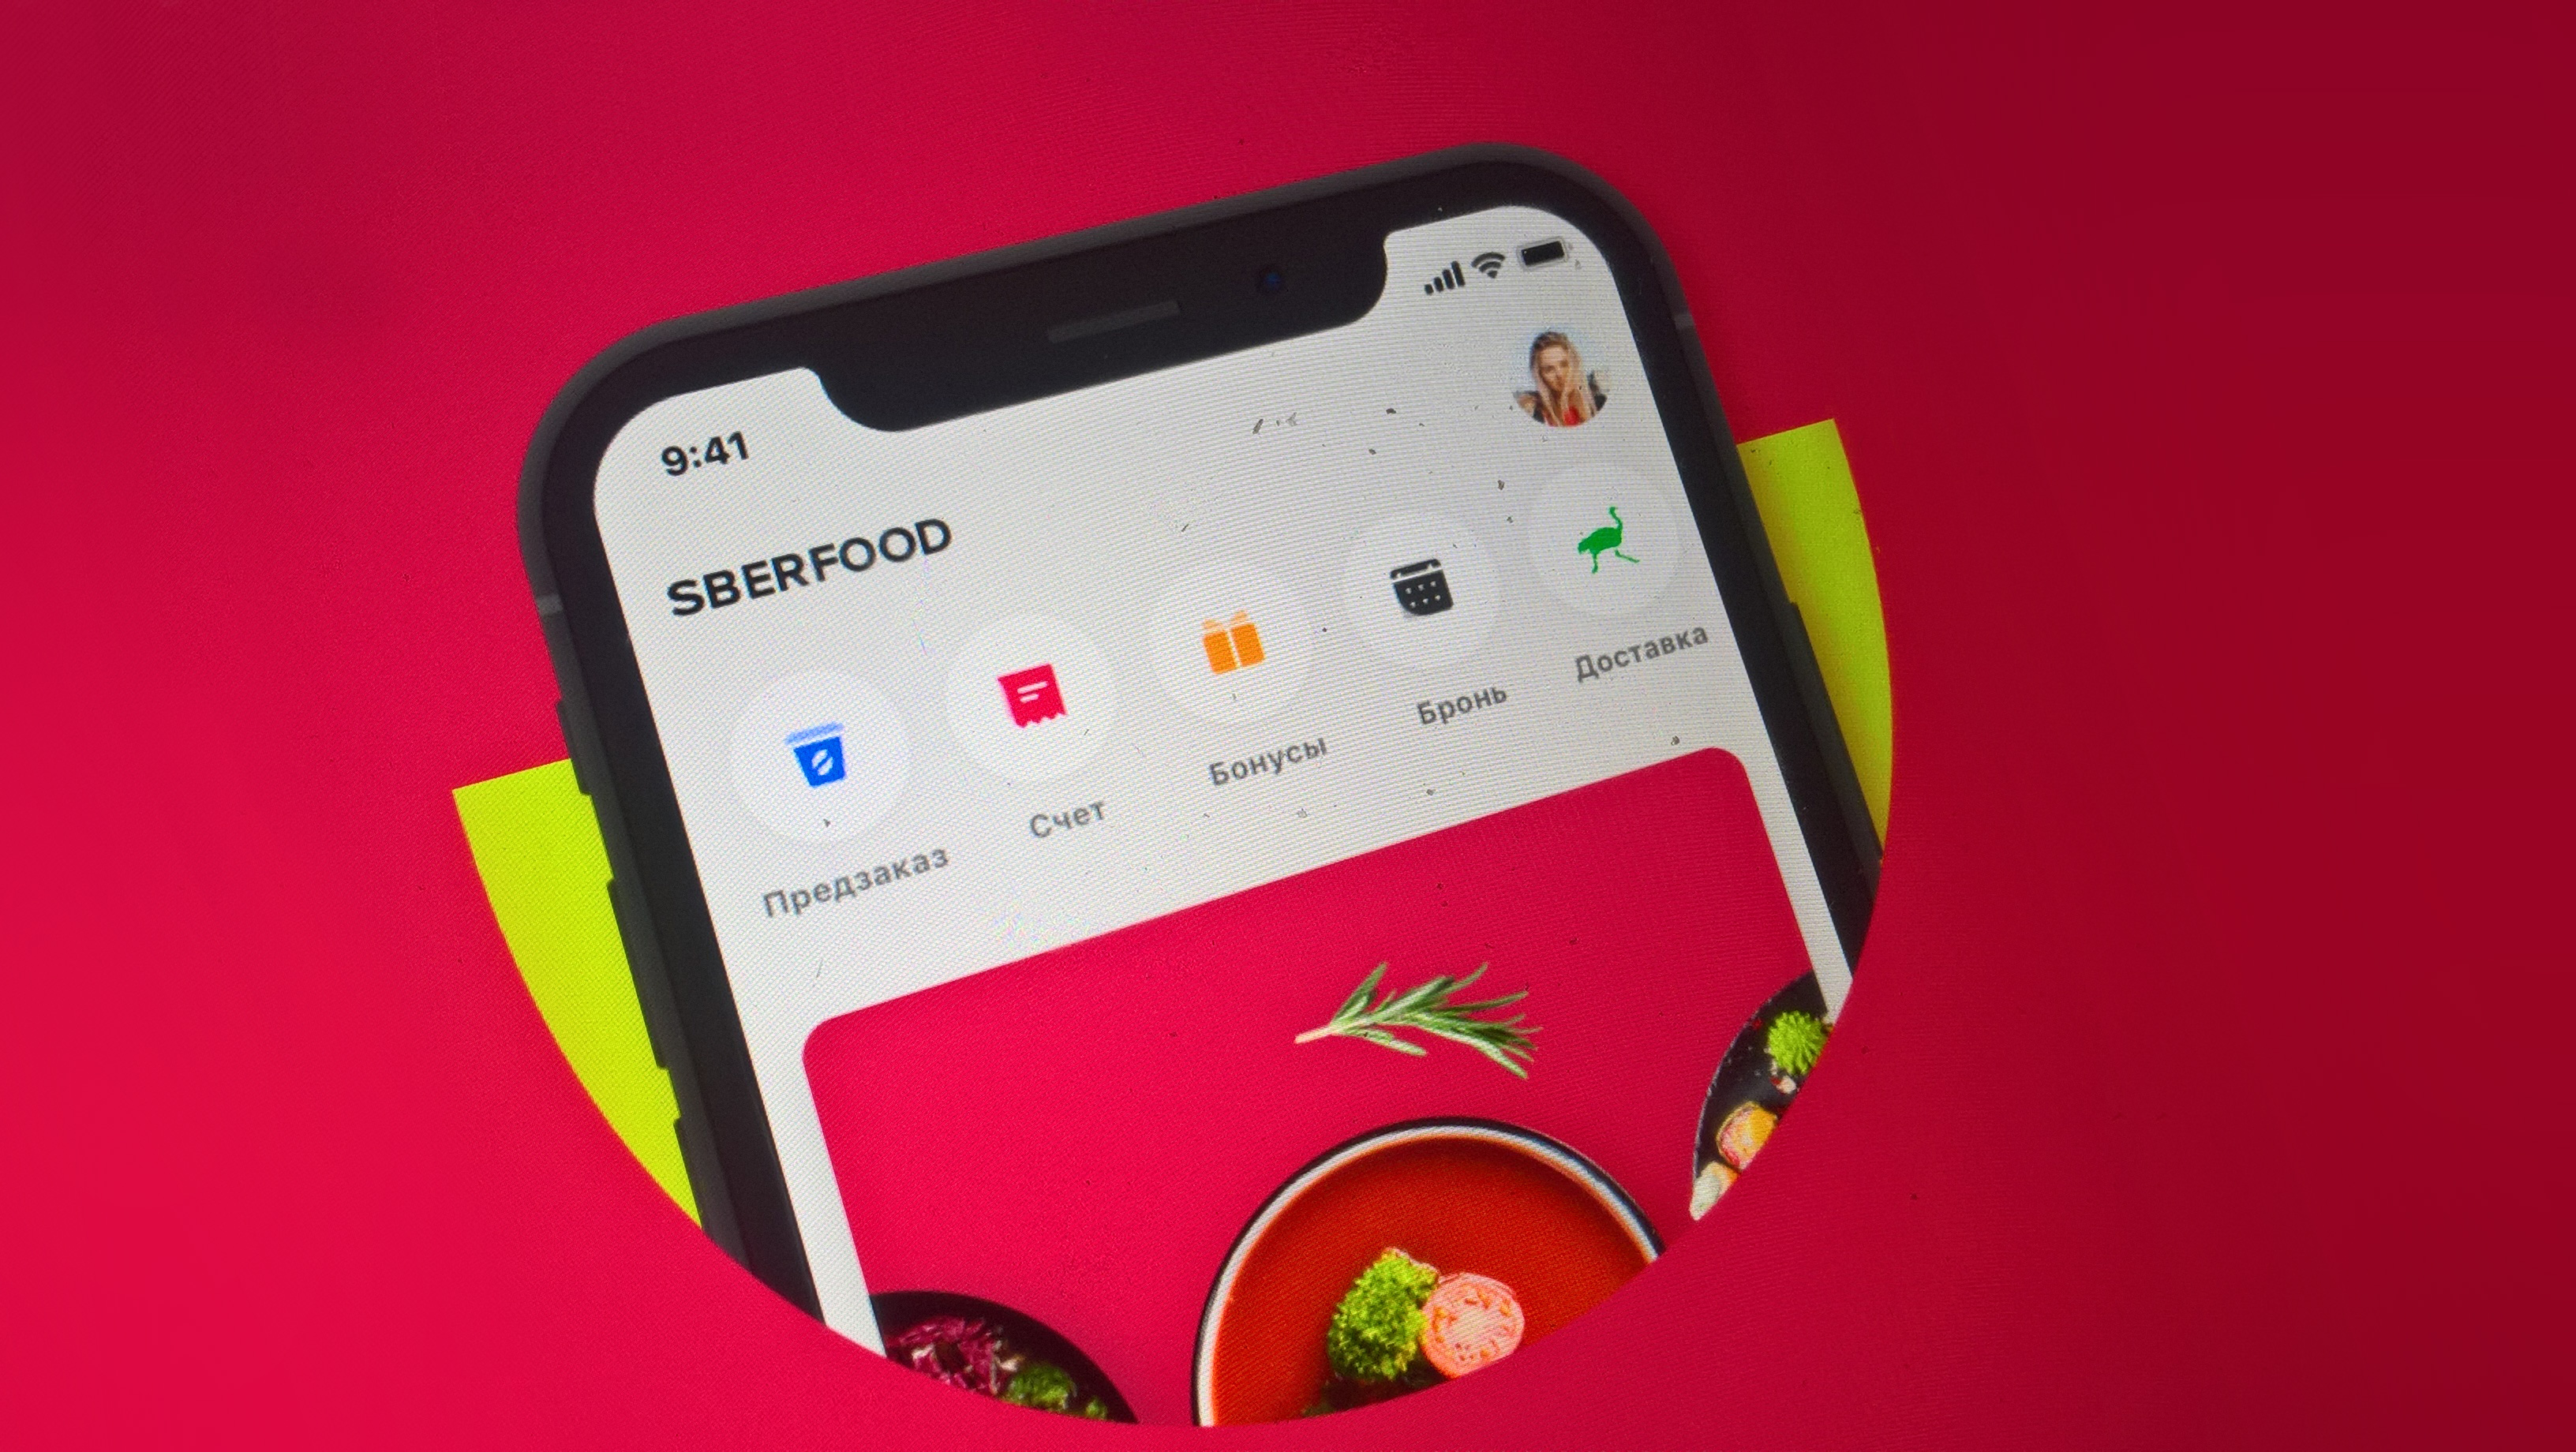 Сбербанк совместно с компанией FoodPlex запустили мобильное приложение SberFood.